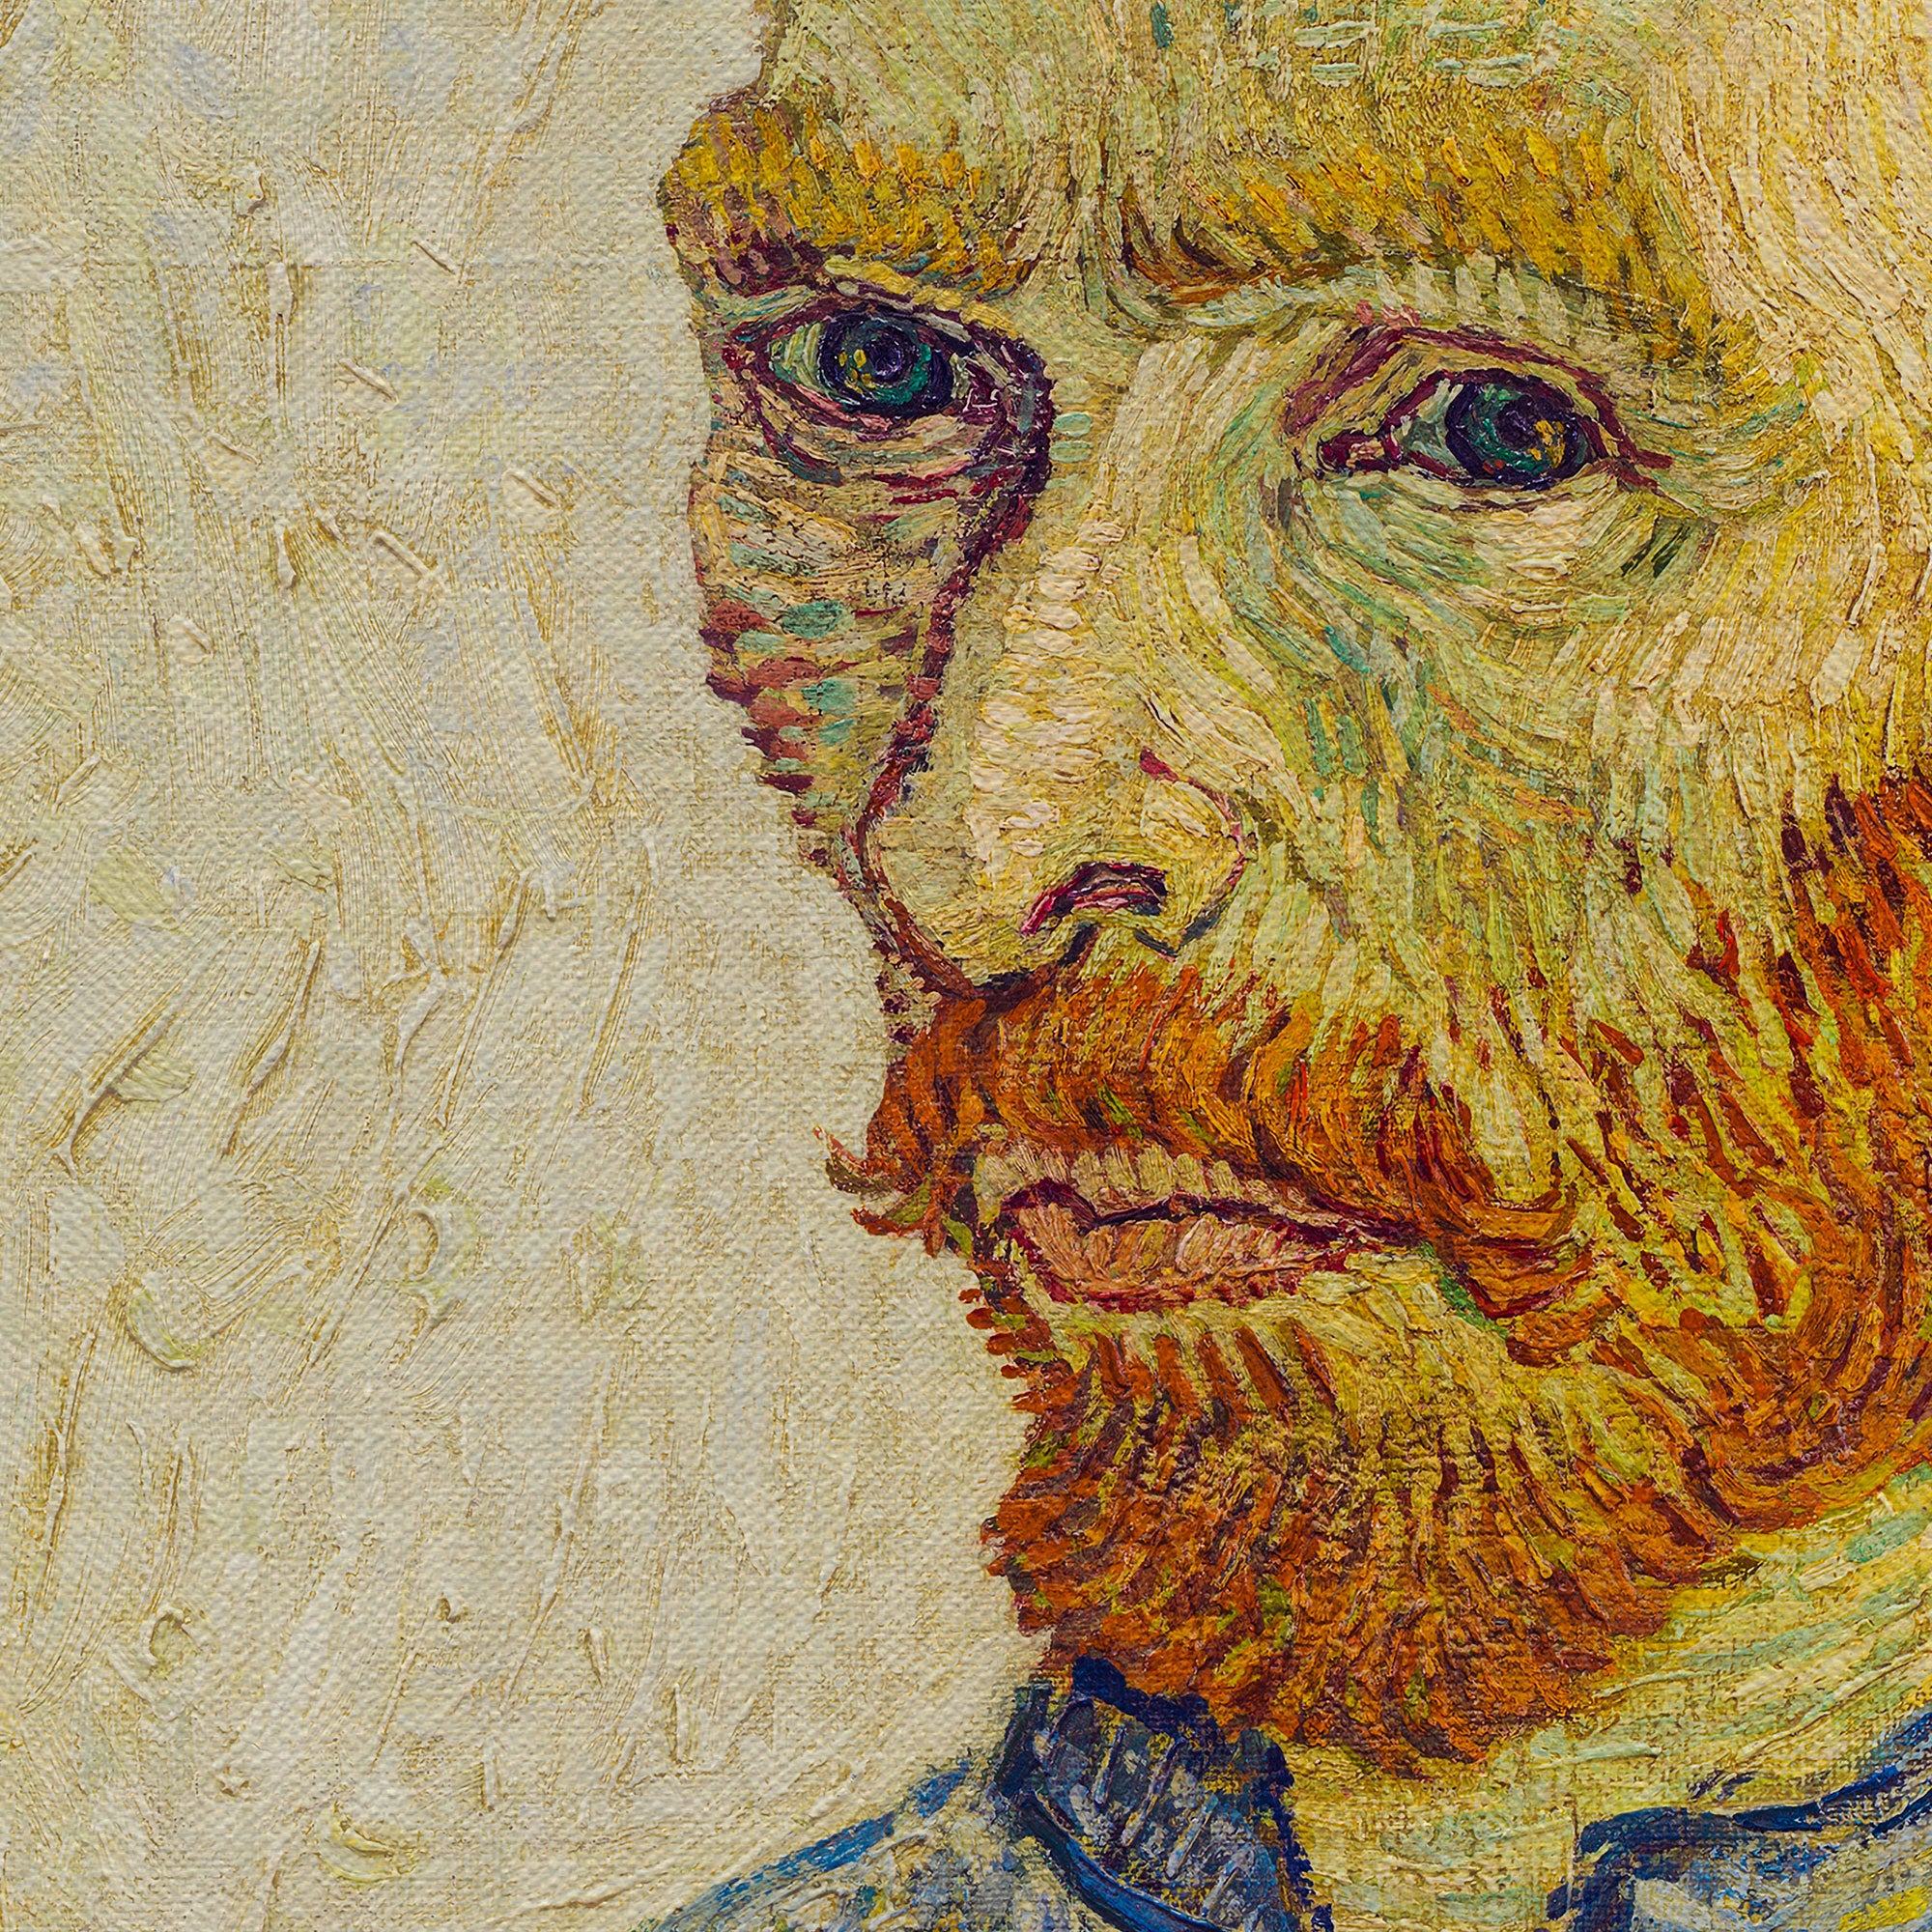 Vincent van Gogh Portrait Canvas Wall Art